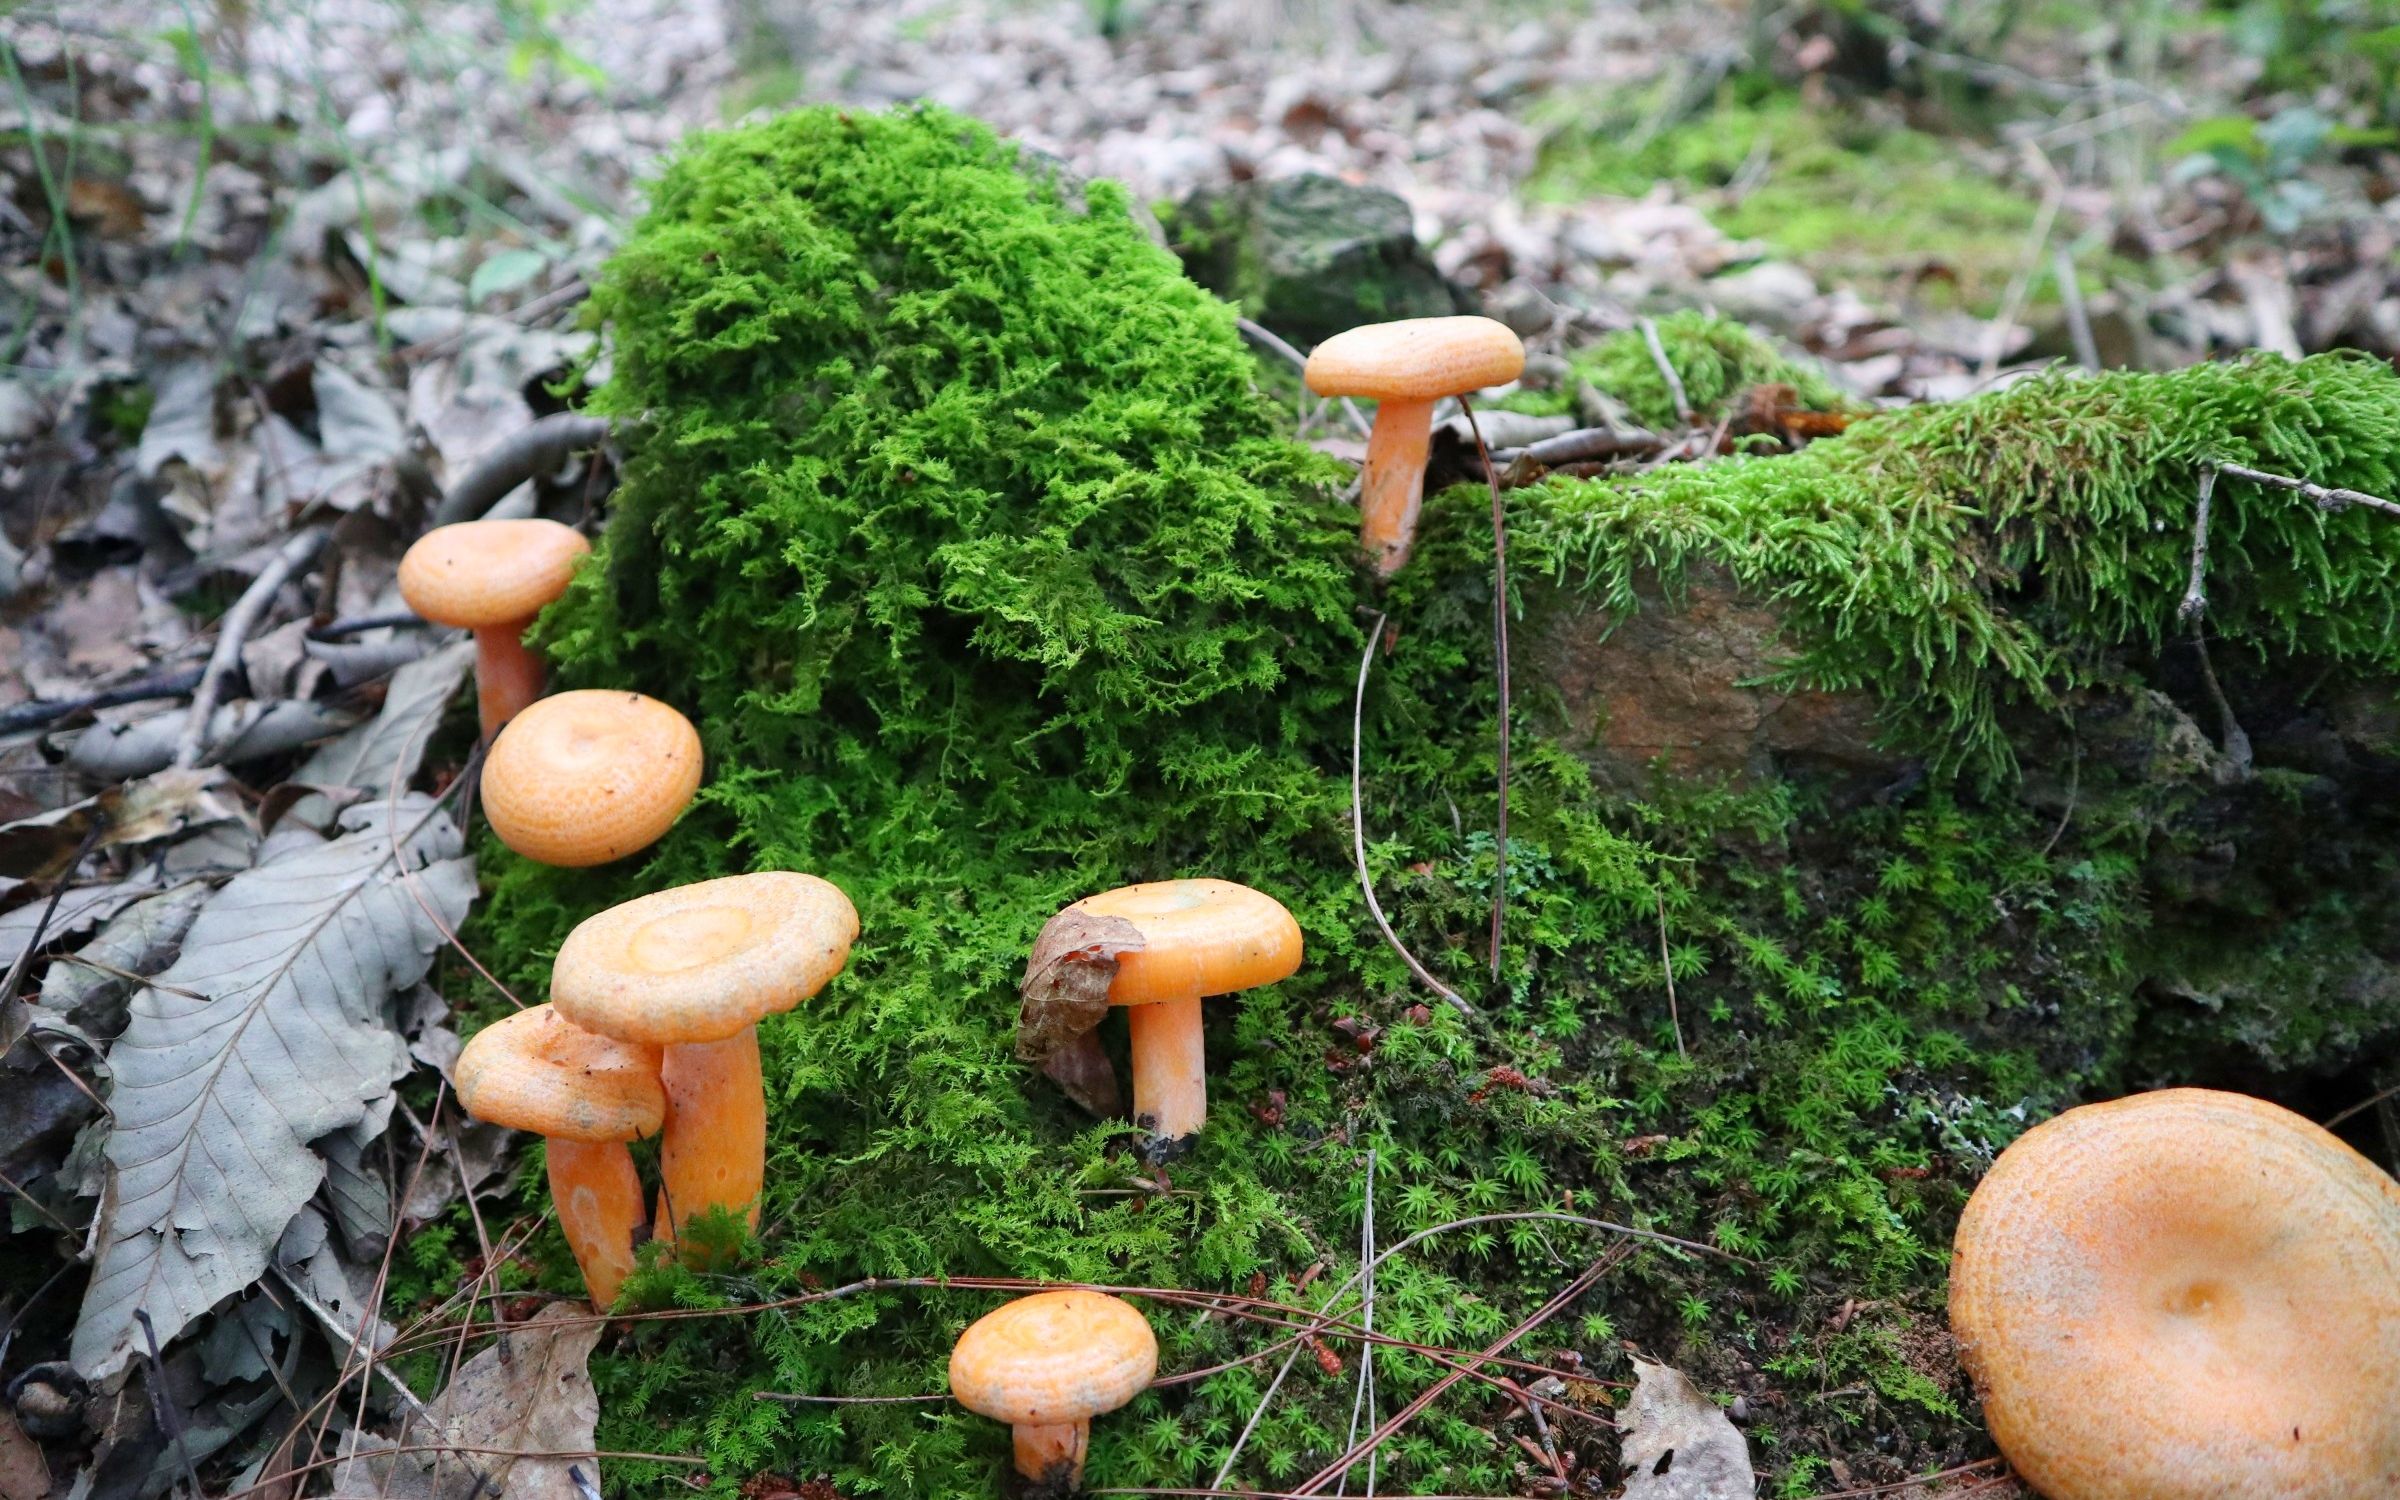 雨后的松树林长了很多蘑菇,还是阿松最爱吃的松树菌,爽歪歪了